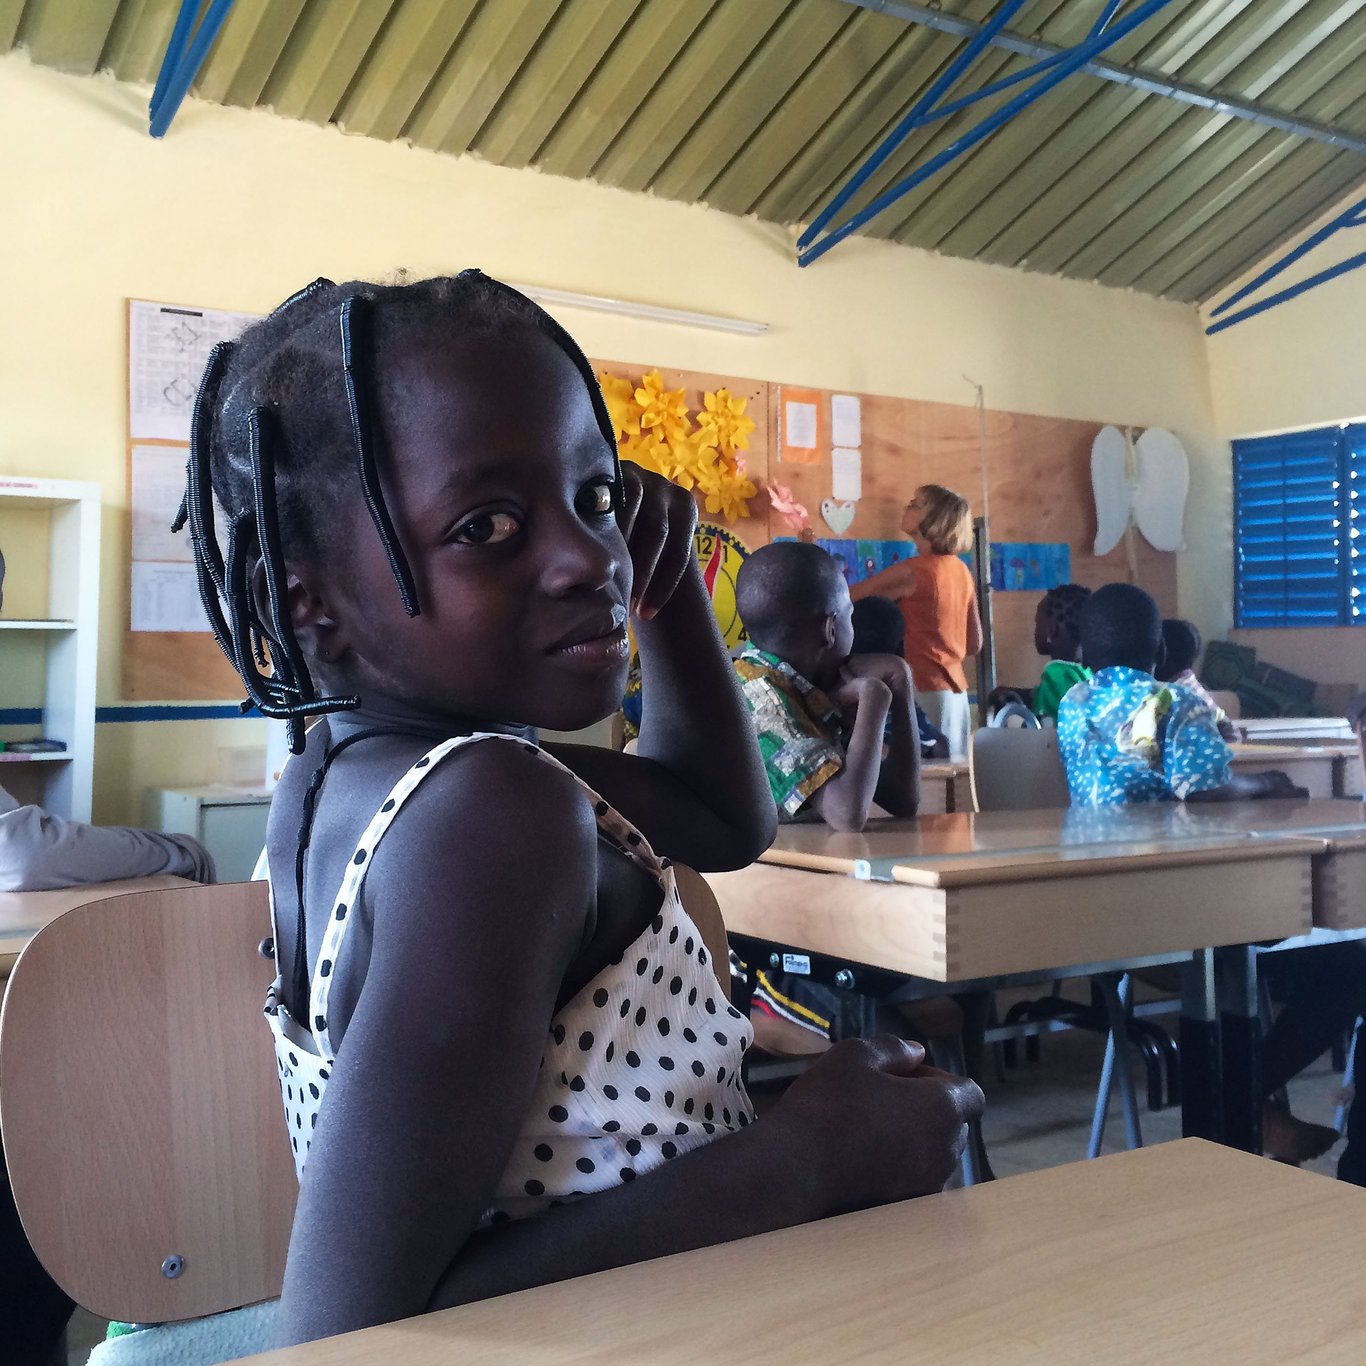 Tüdruk Burkina Faso klassiruumis